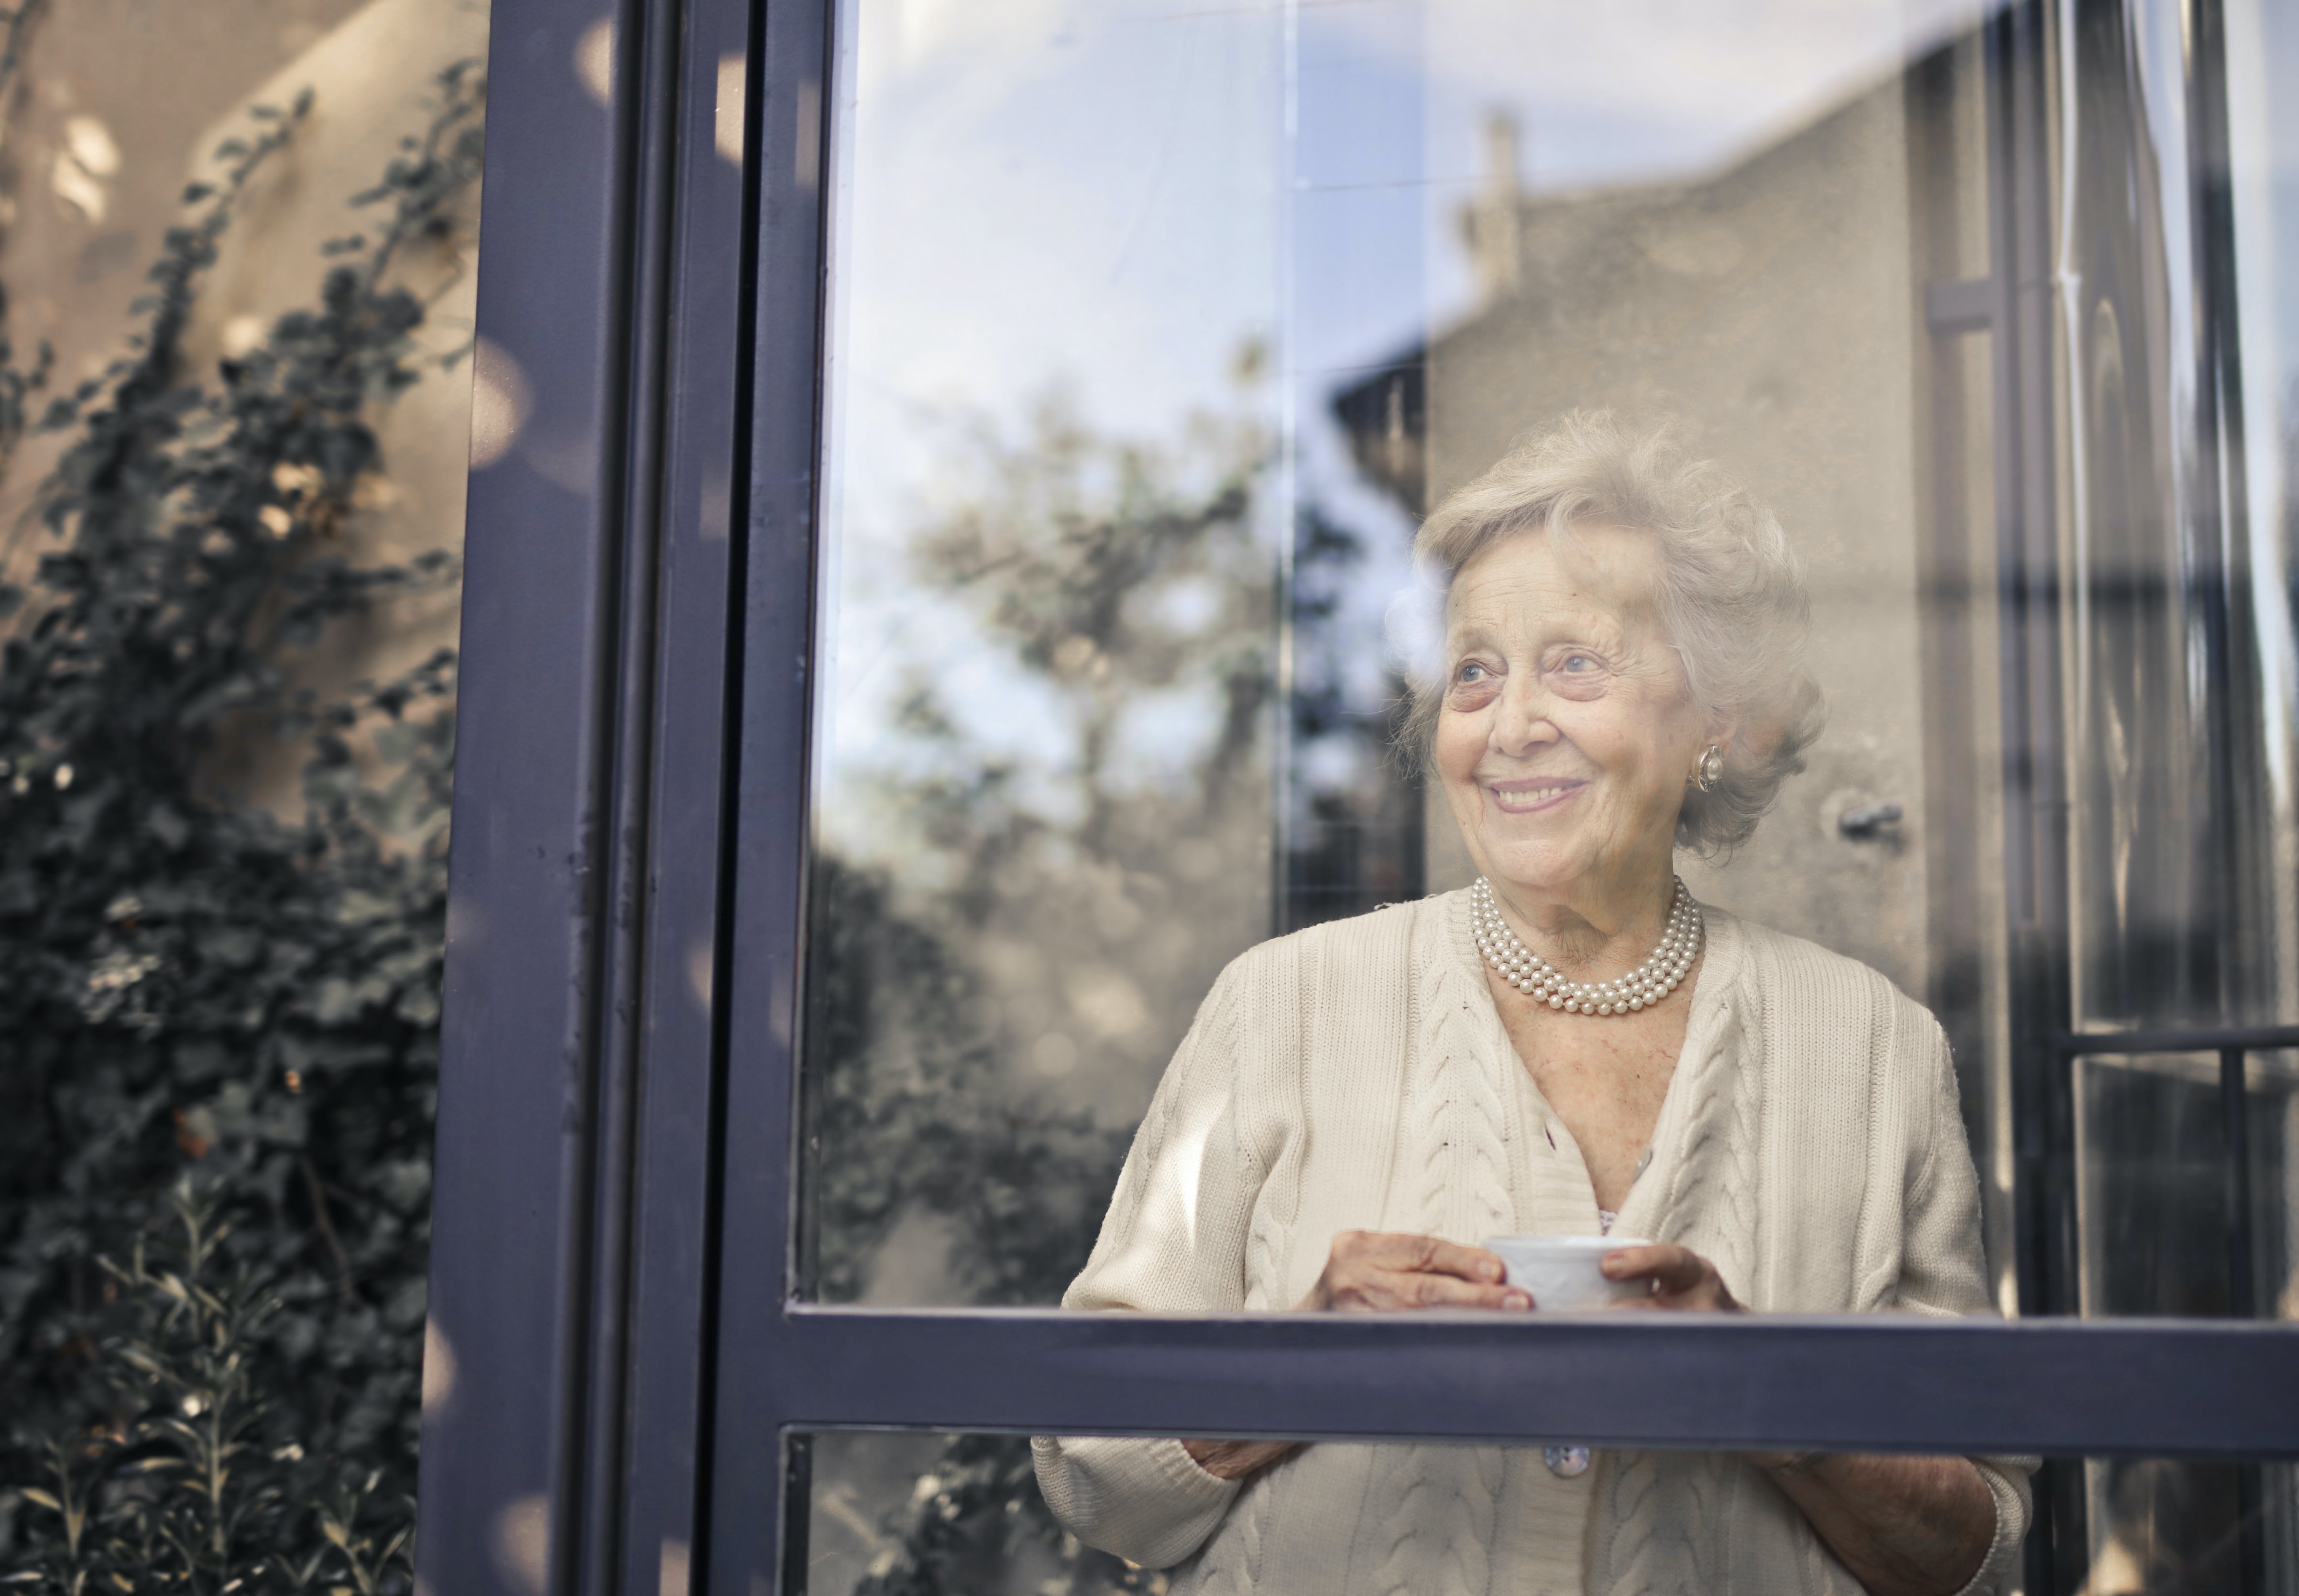 Eine ältere Frau lächelt, während sie ein Getränk in der Hand hält und aus dem Fenster schaut | Quelle: Pexels